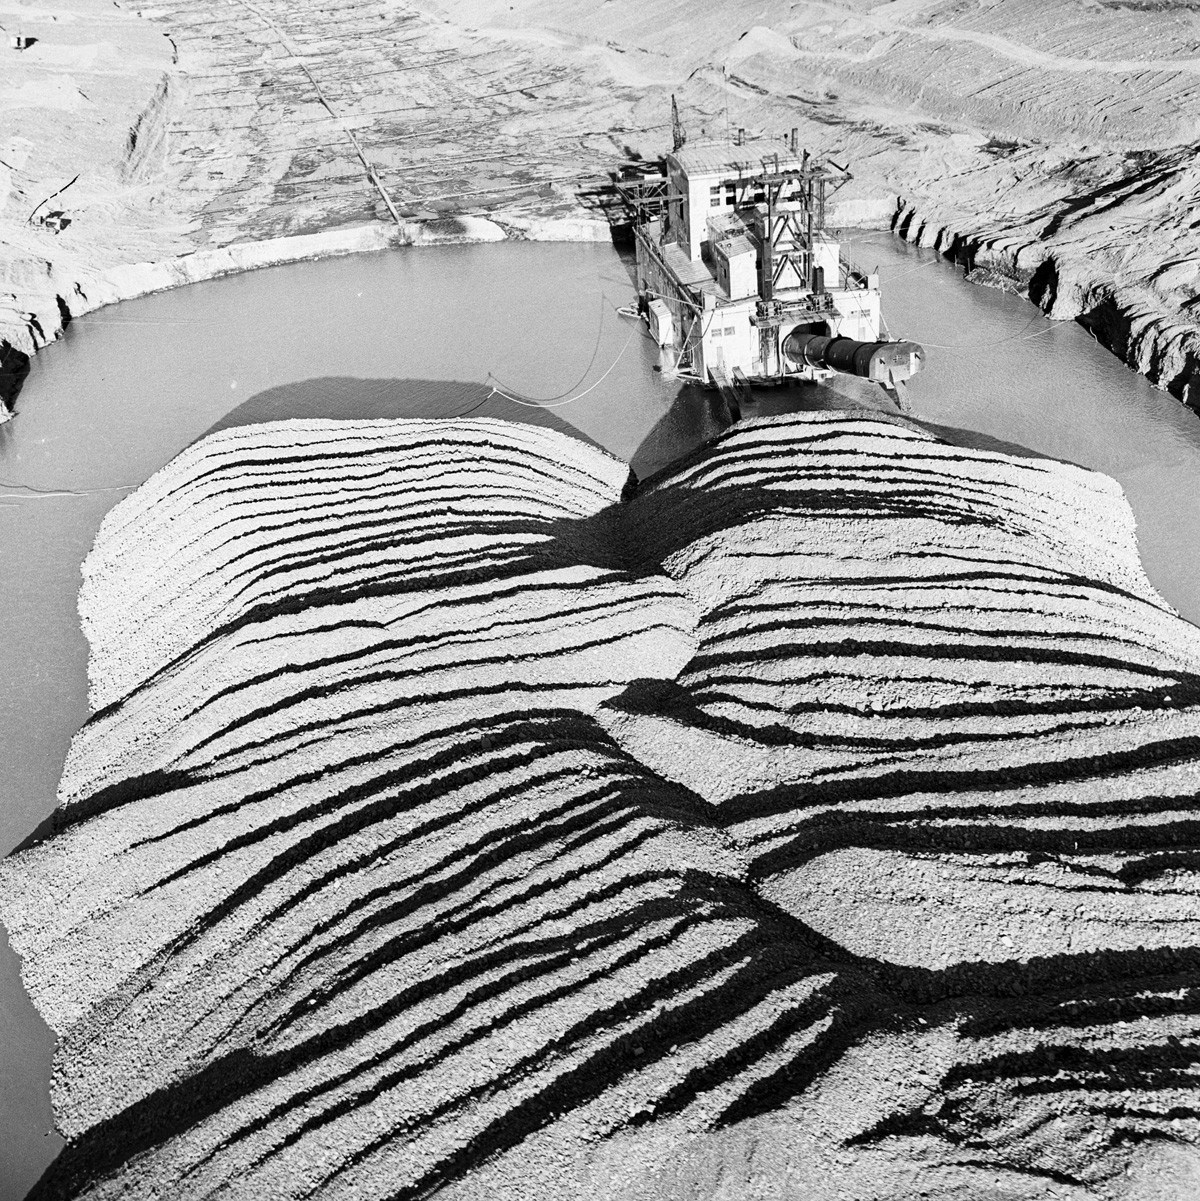 コリマ川アリスケロフ採金地、ビリビノ市マガダン州、1964年。ここは、砂金の処理能力が一日に数千トンで、数百人の労働者を交代している。	
